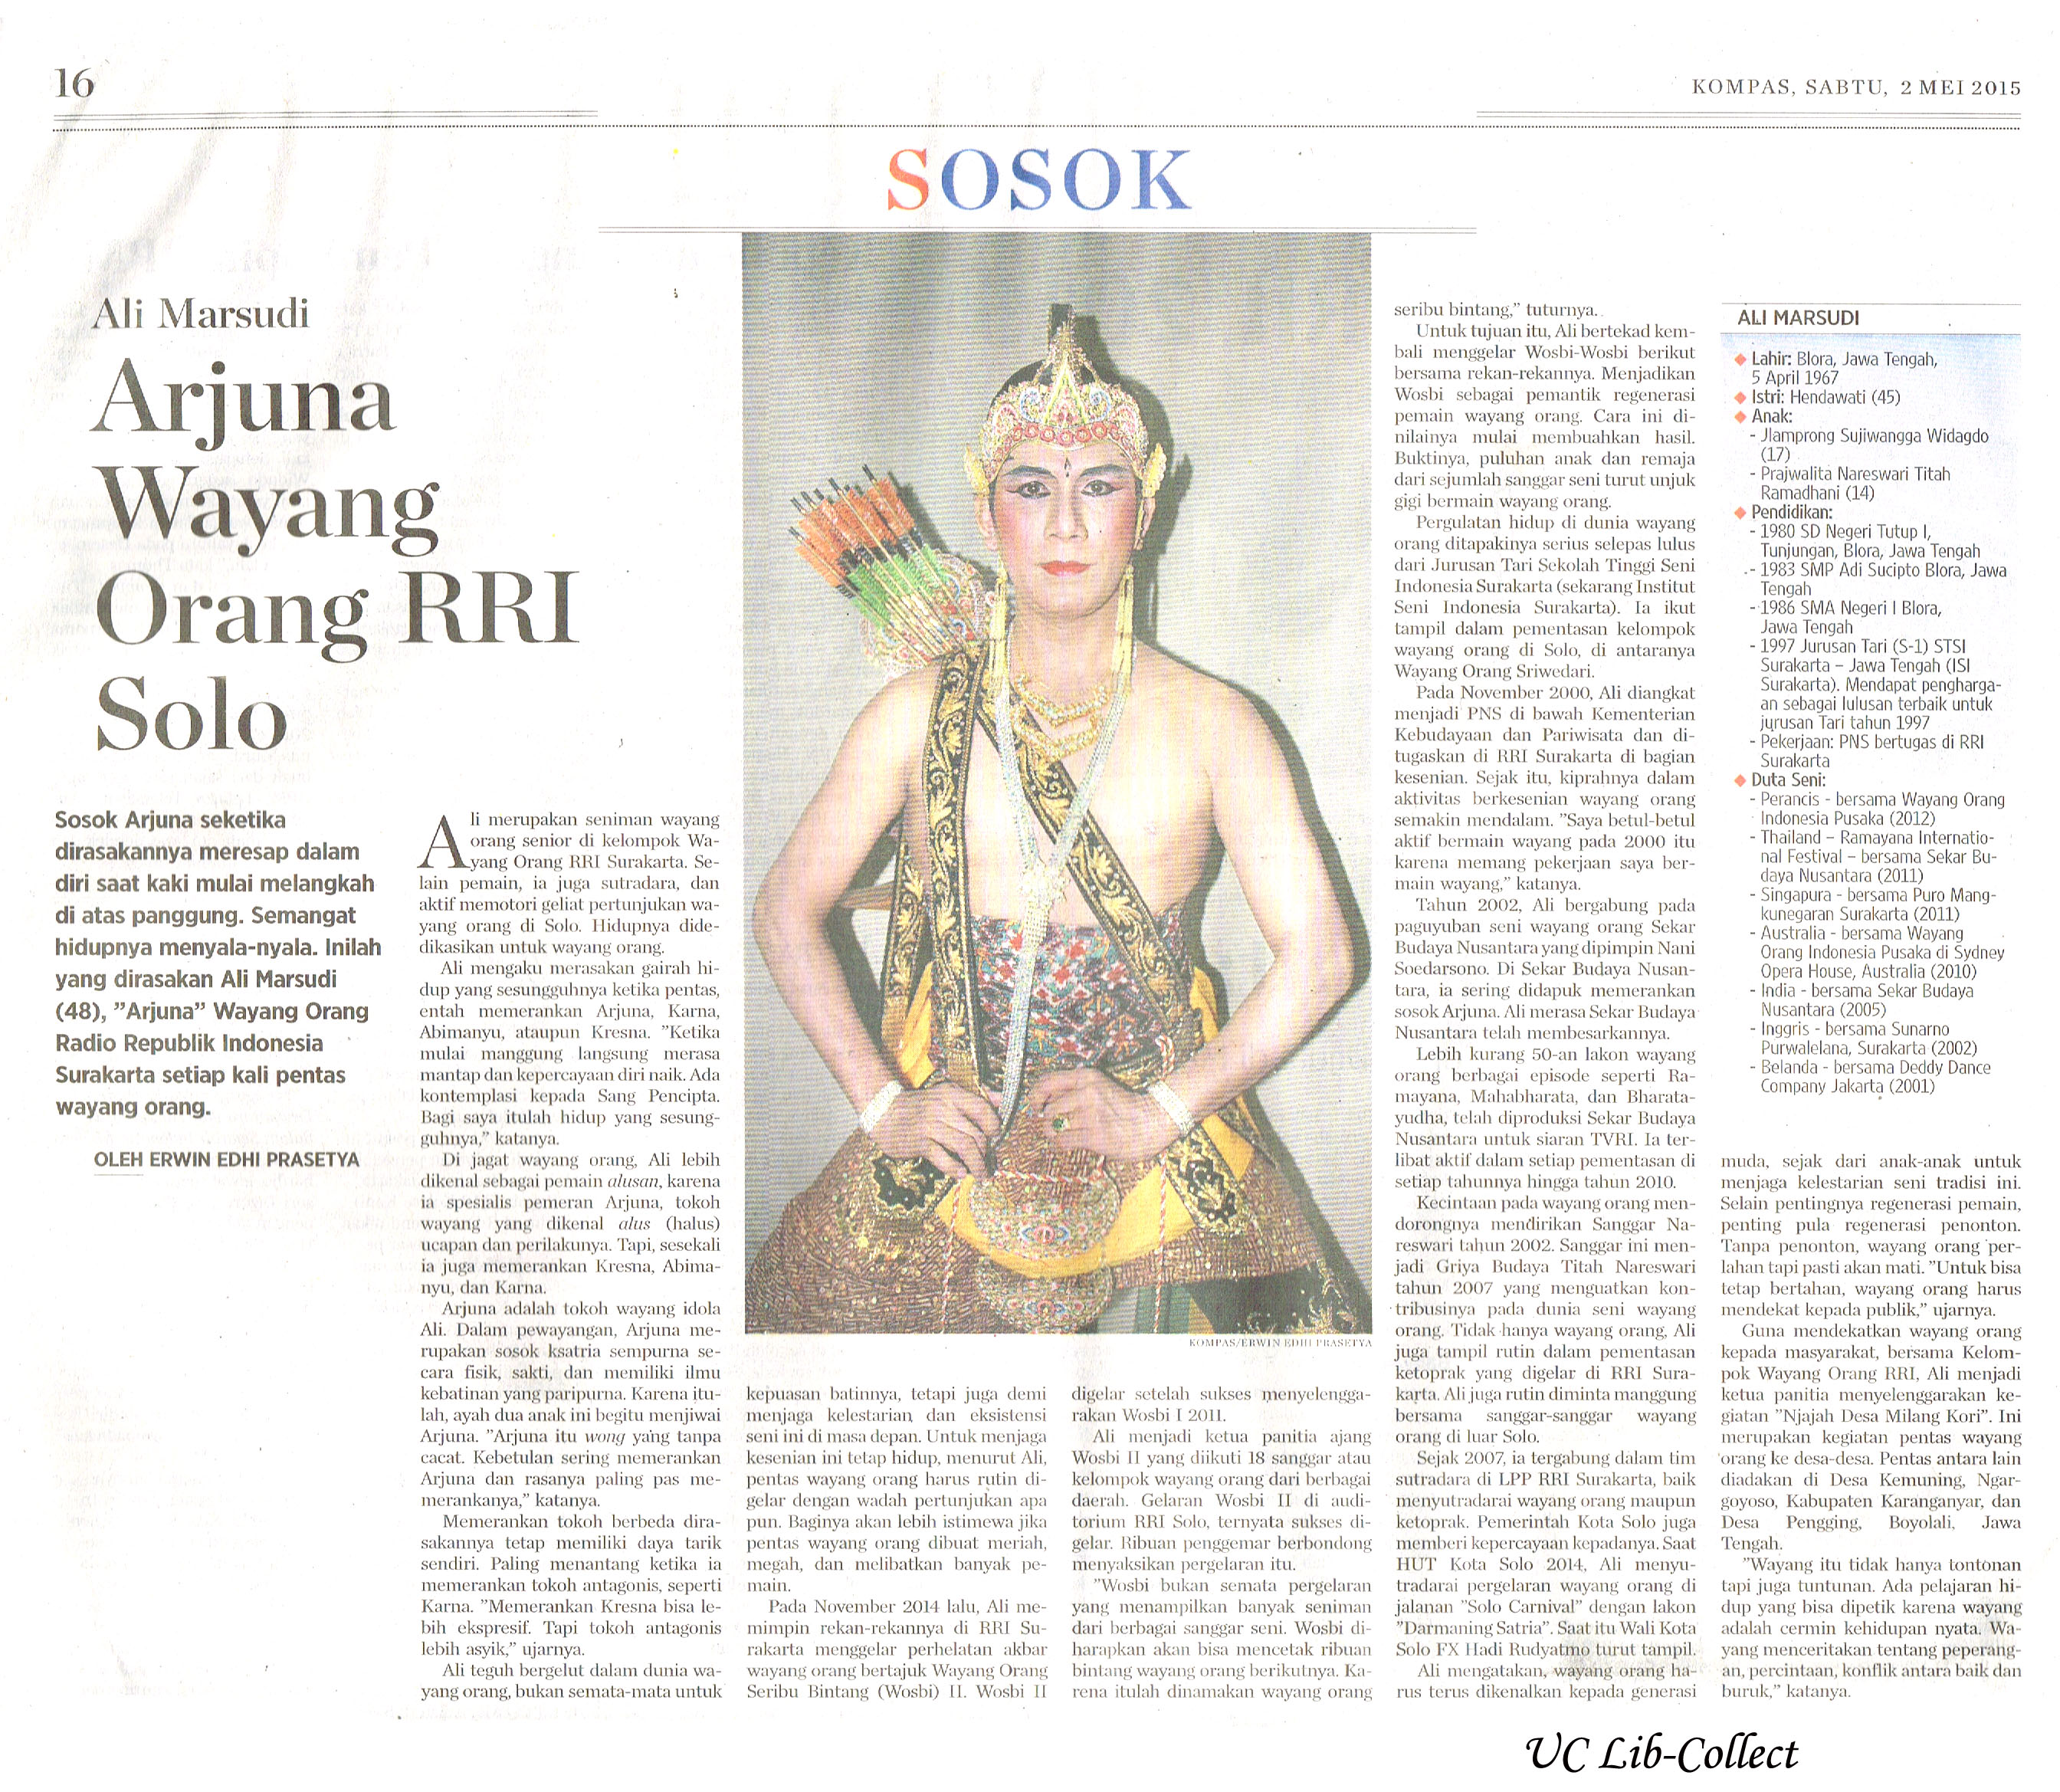 Arjuna Wayang Orang RRI Solo. Kompas.2 Mei 2015.Hal.16